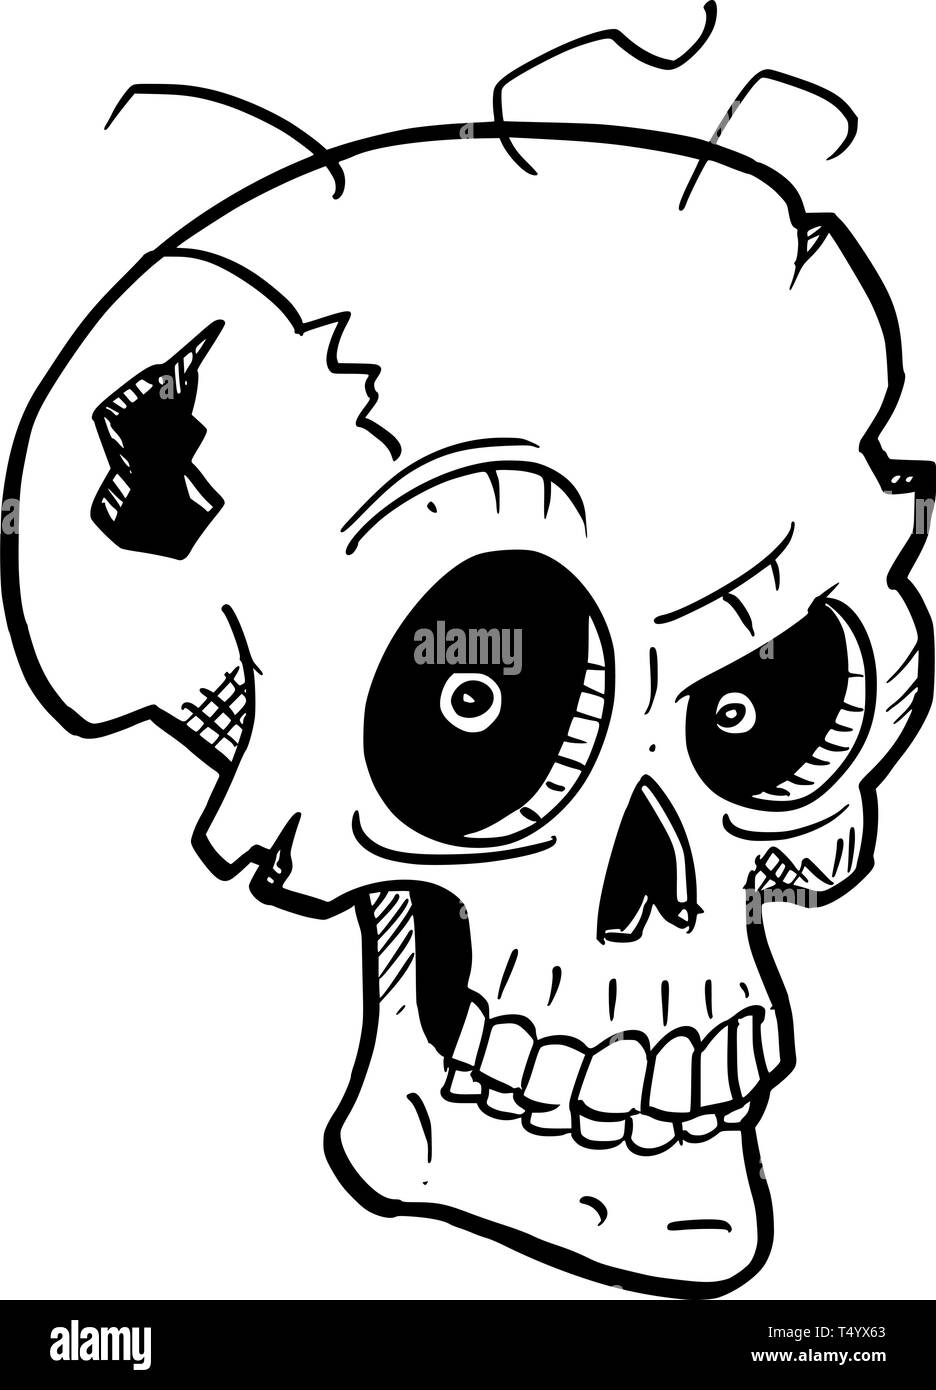 Illustration conceptuelle de dessin animé de crazy monster crâne avec yeux mauvais. Illustration de Vecteur